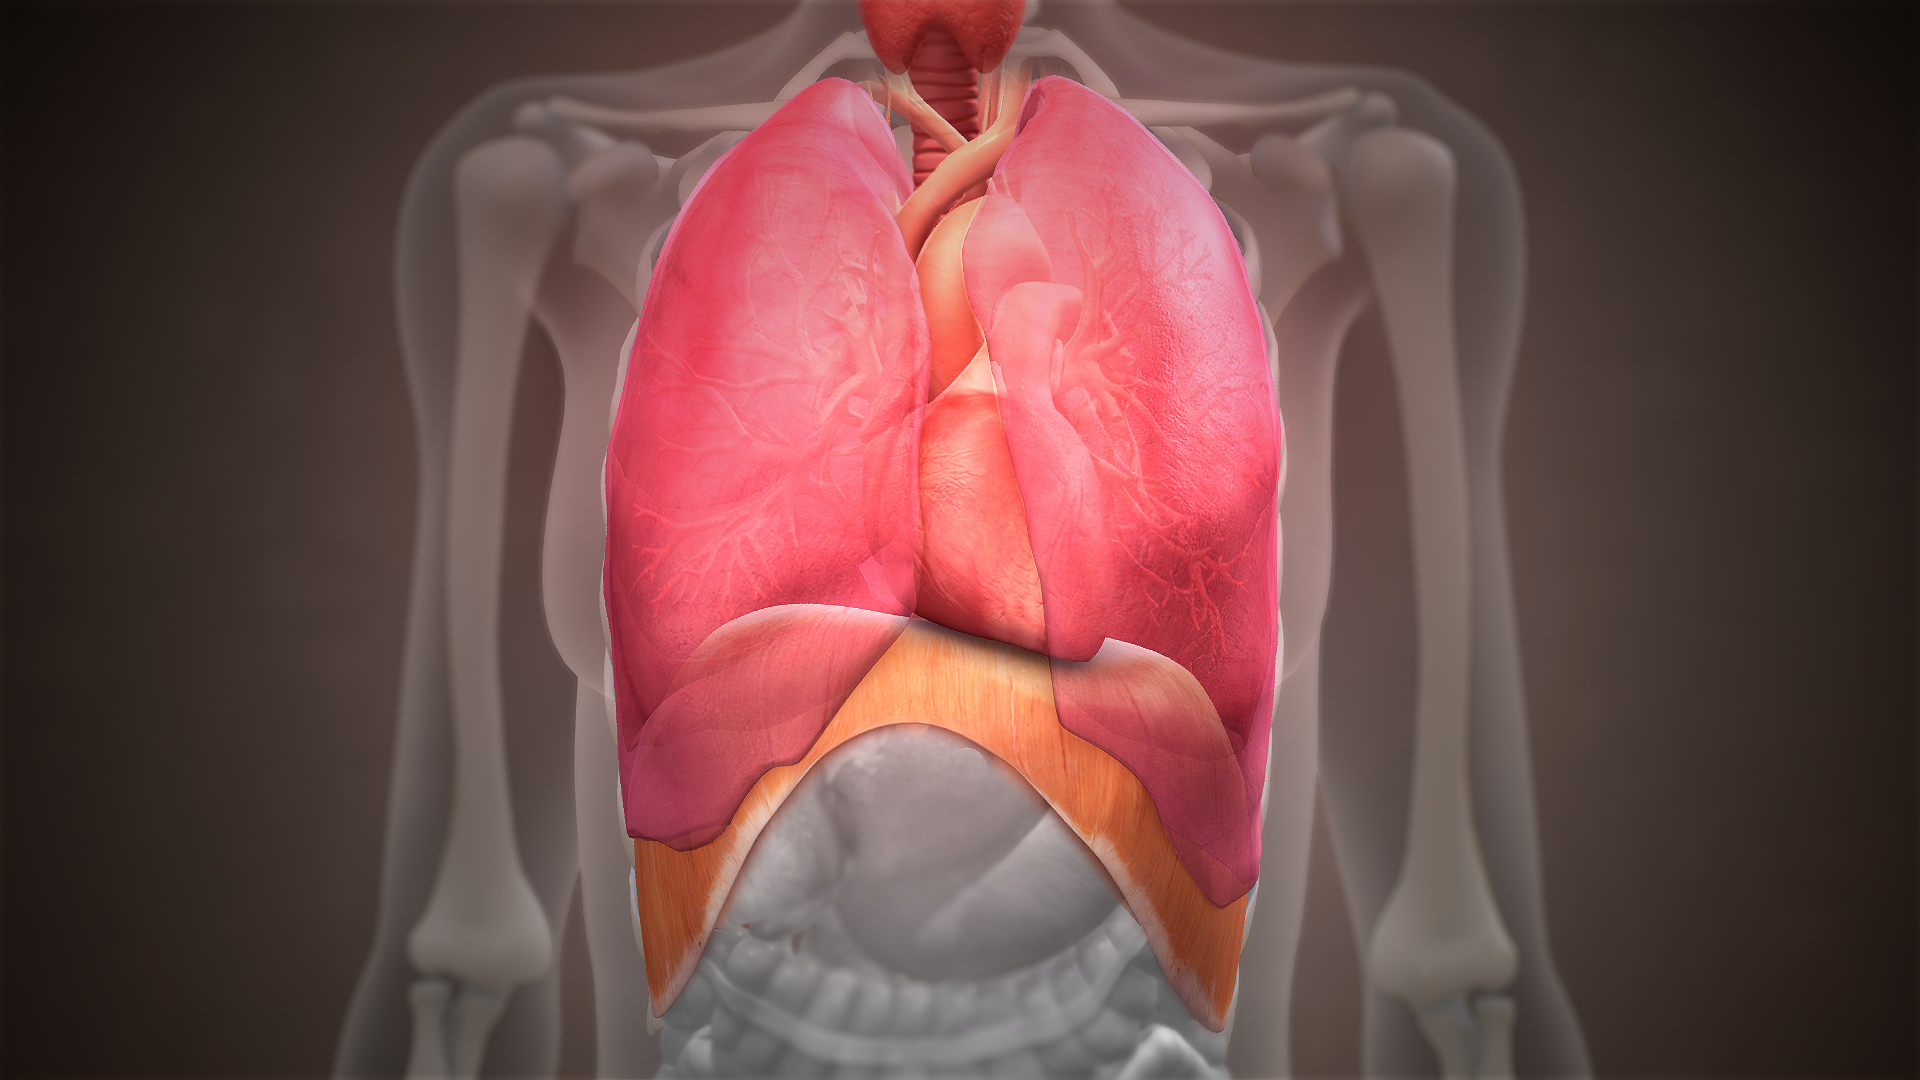 Imagen realista del diafragma y los pulmones